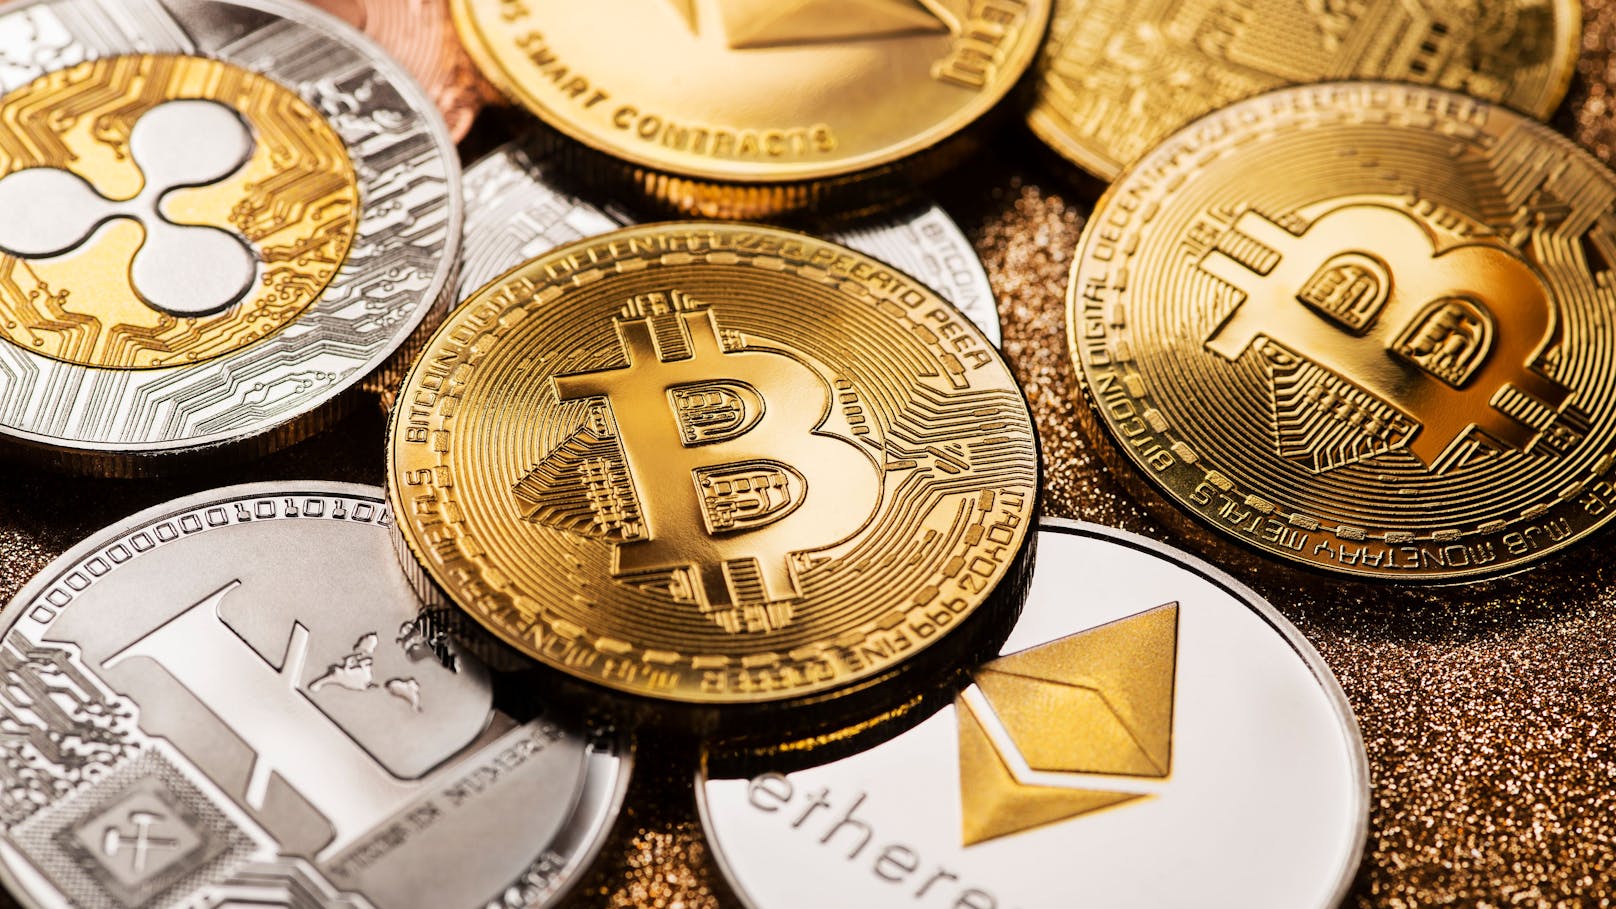 Bitcoin-Betrug! Statt fetter Gewinne 190.000 € verloren